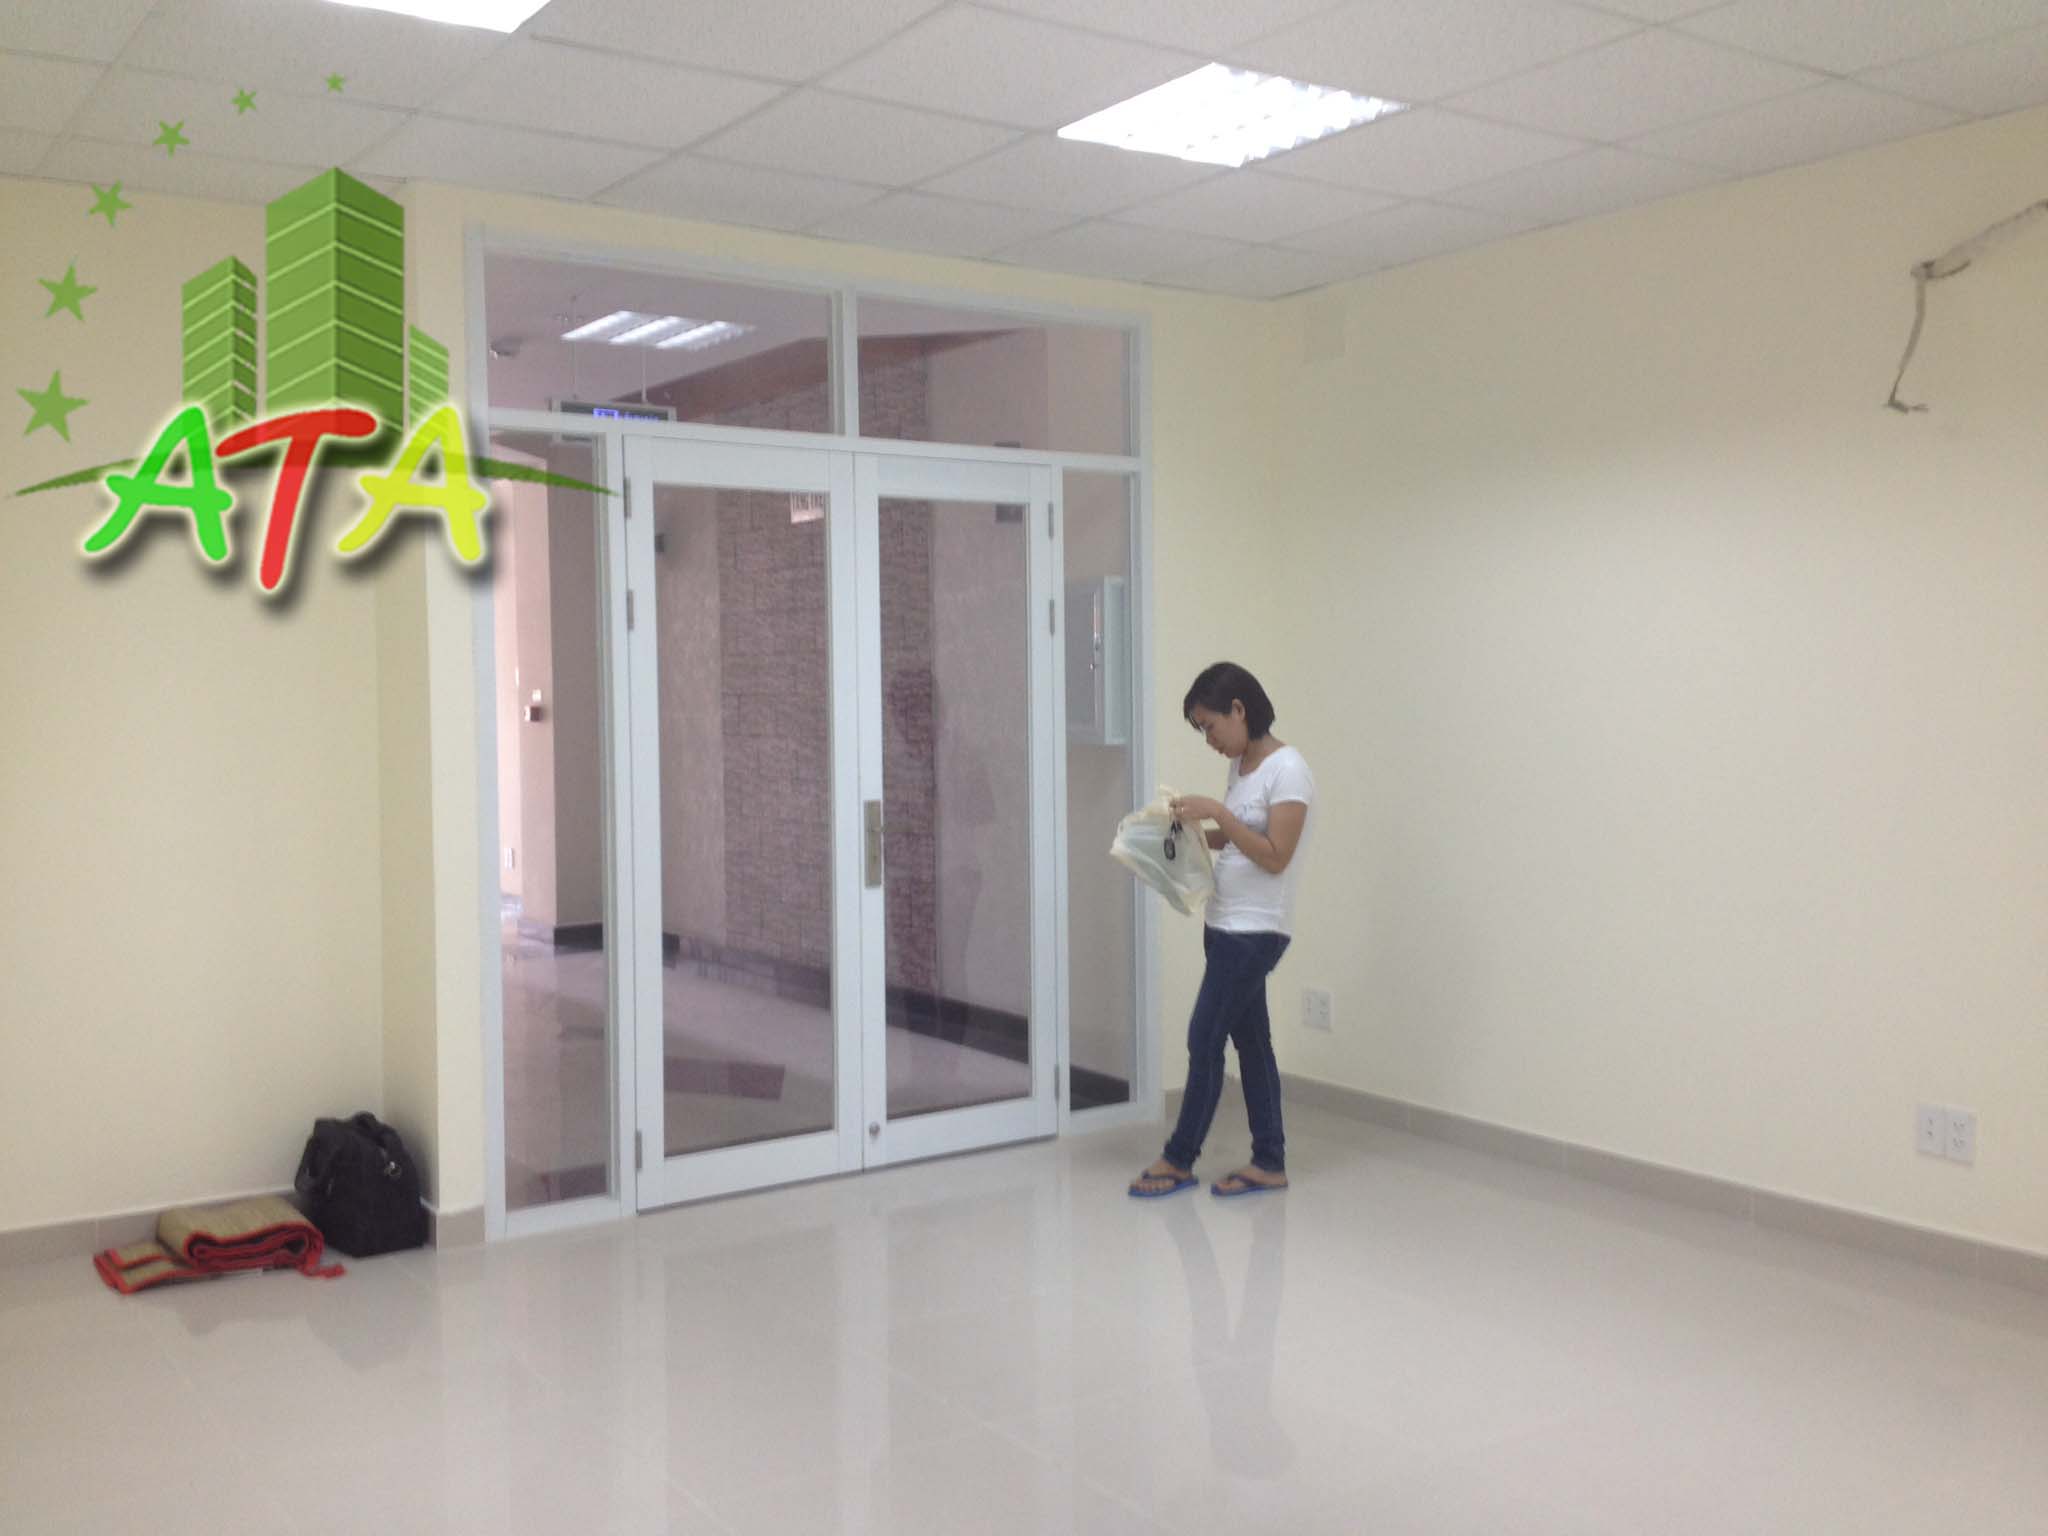 văn phòng cho thuê quận Tân Bình, HH Building đường Hồng Hà quận Tân Bình, ngay sân bay Tân Sơn Nhất, office for lease in Tan Son Nhat airport